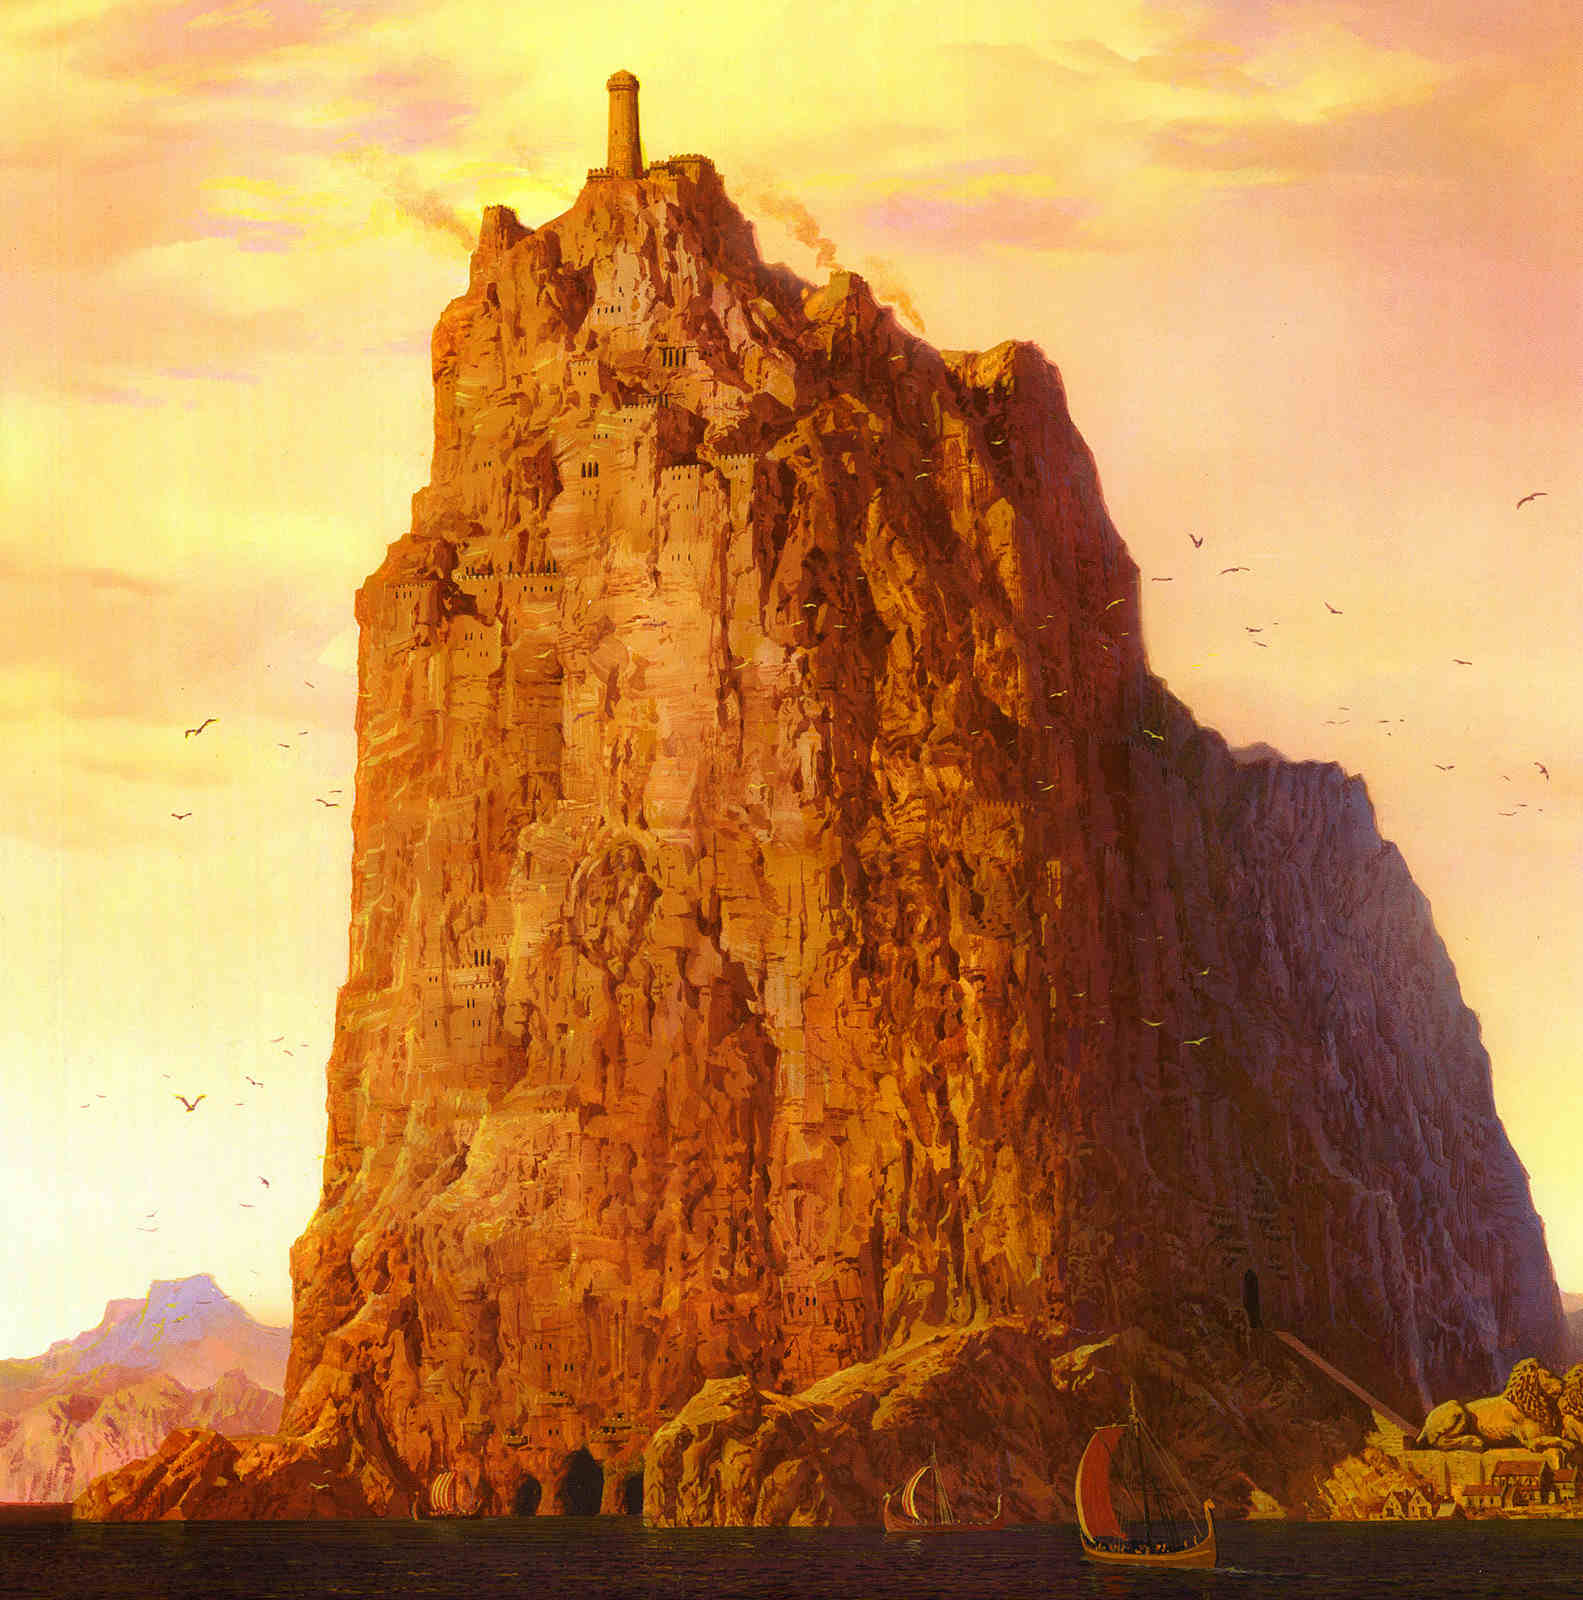 original Casterly Rock illustration